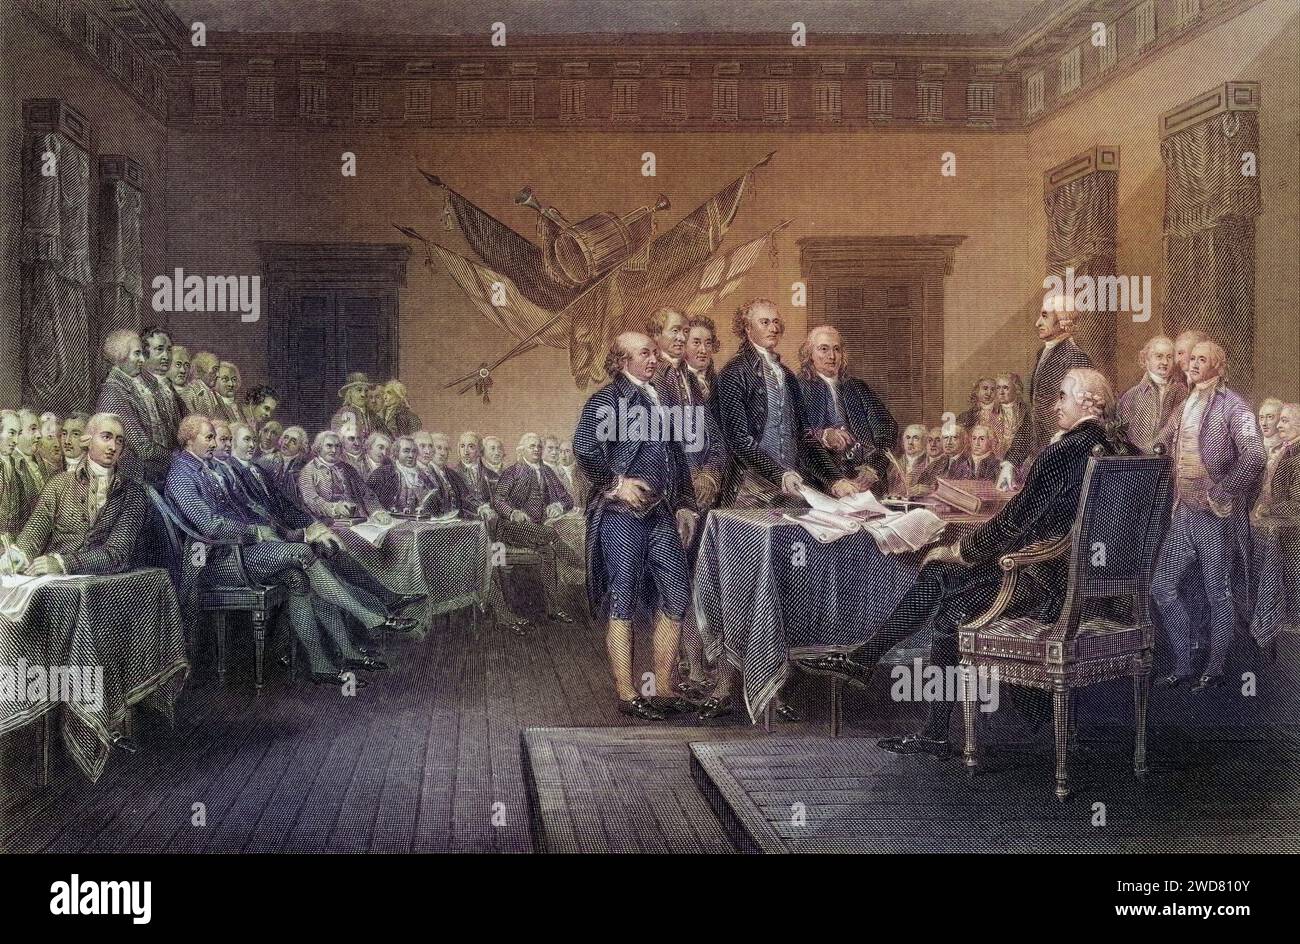 Die Unabhängigkeitserklärung Juli 1776, USA, Historisch, digital restaurierte Reproduktion von einer Vorlage aus dem 19. Jahrhundert, Record date not stated Stock Photo